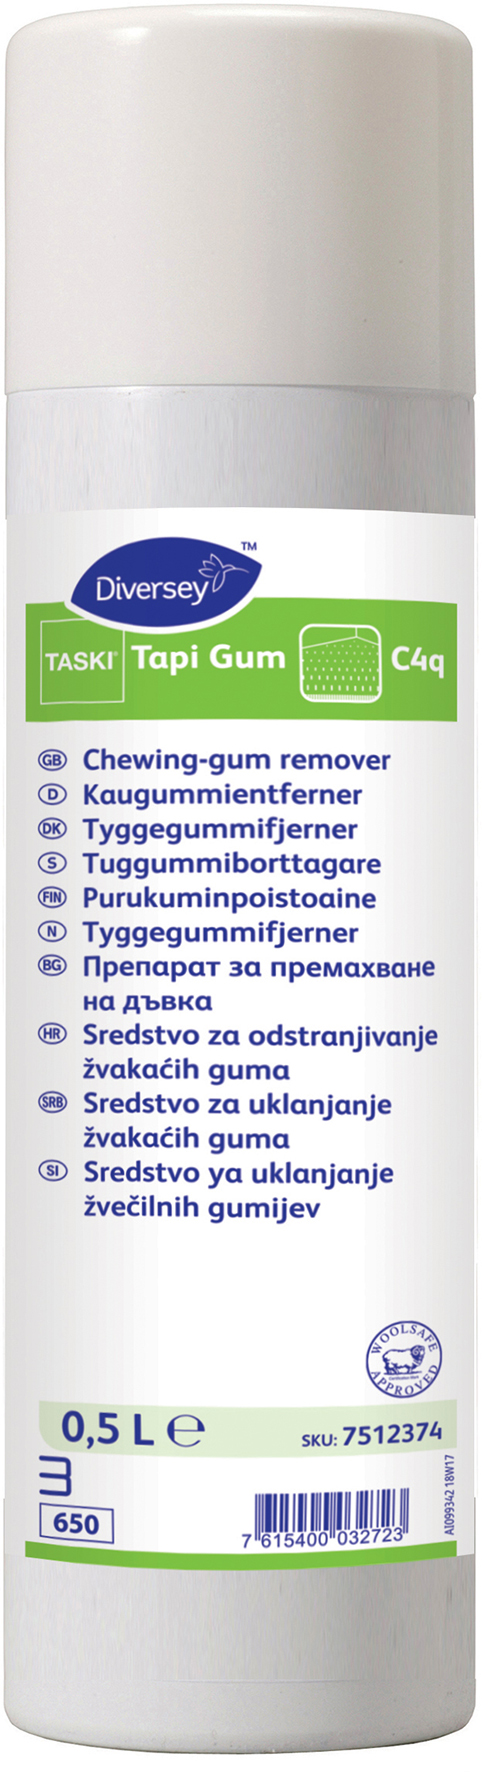 [2260225] Taski Tapi Gum W412 0,5L